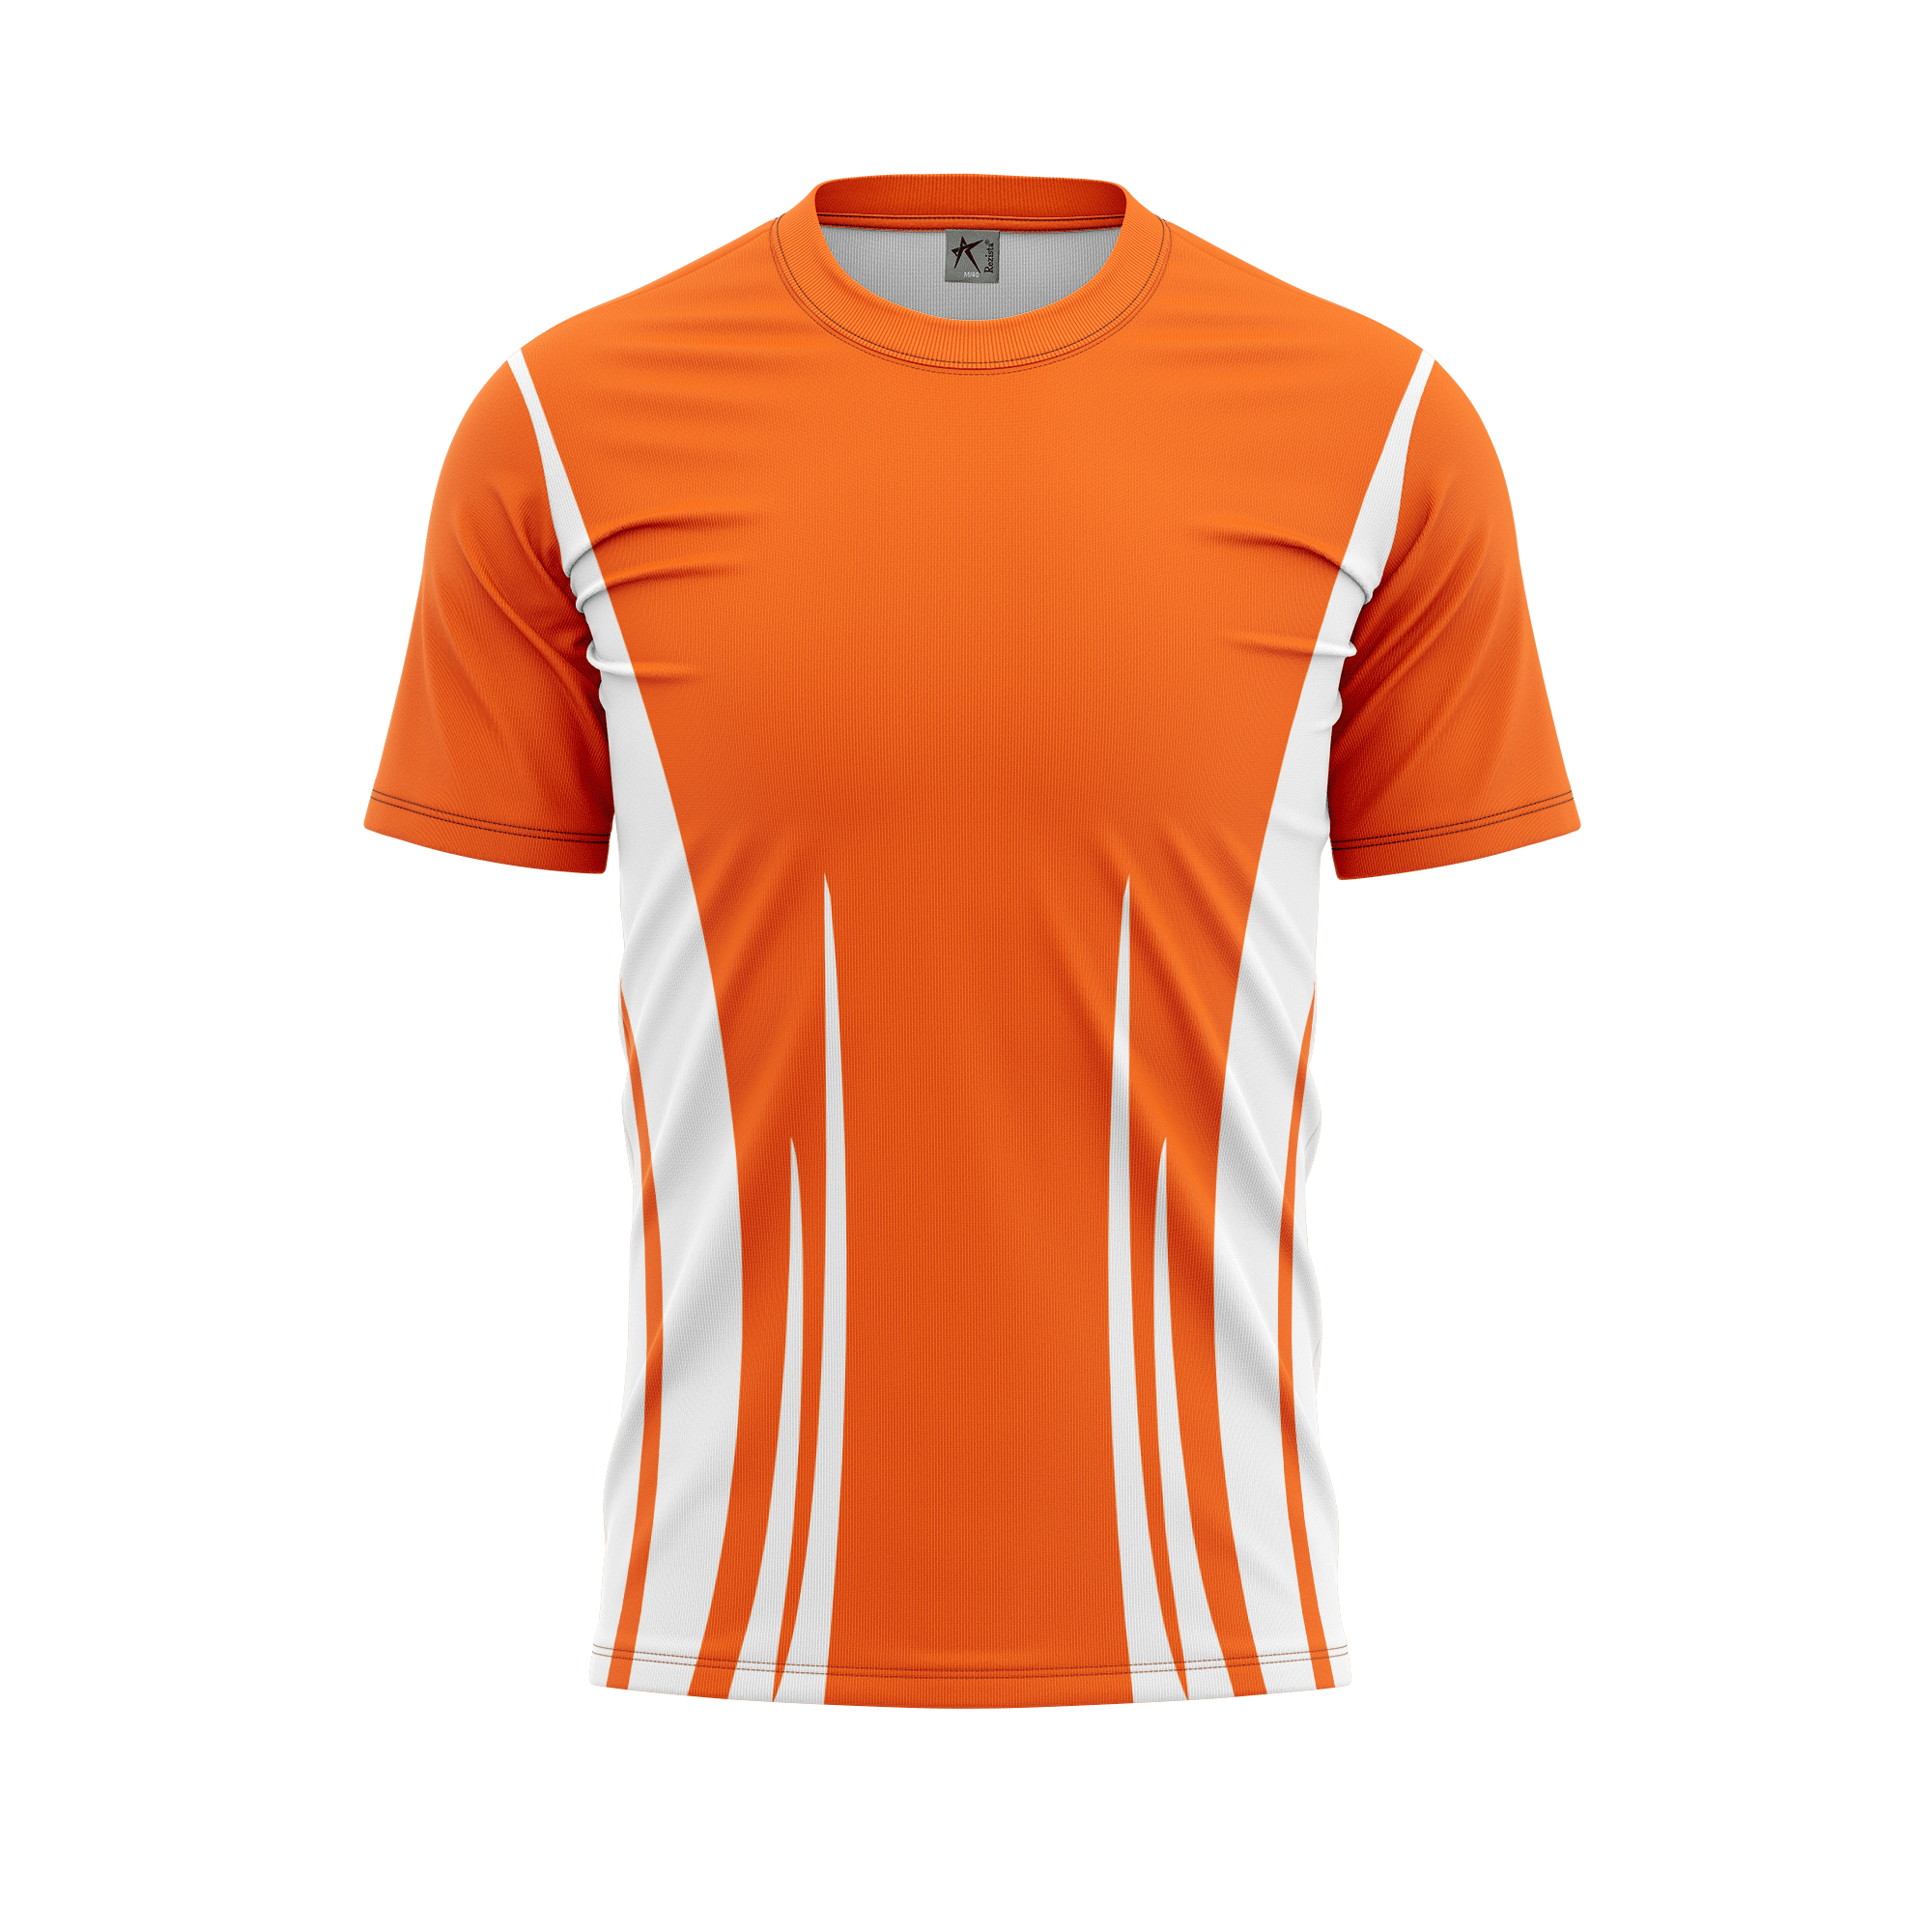 Rezista Customized Jersey - Sub Design-Orange-7 | Customized T-shirts ...